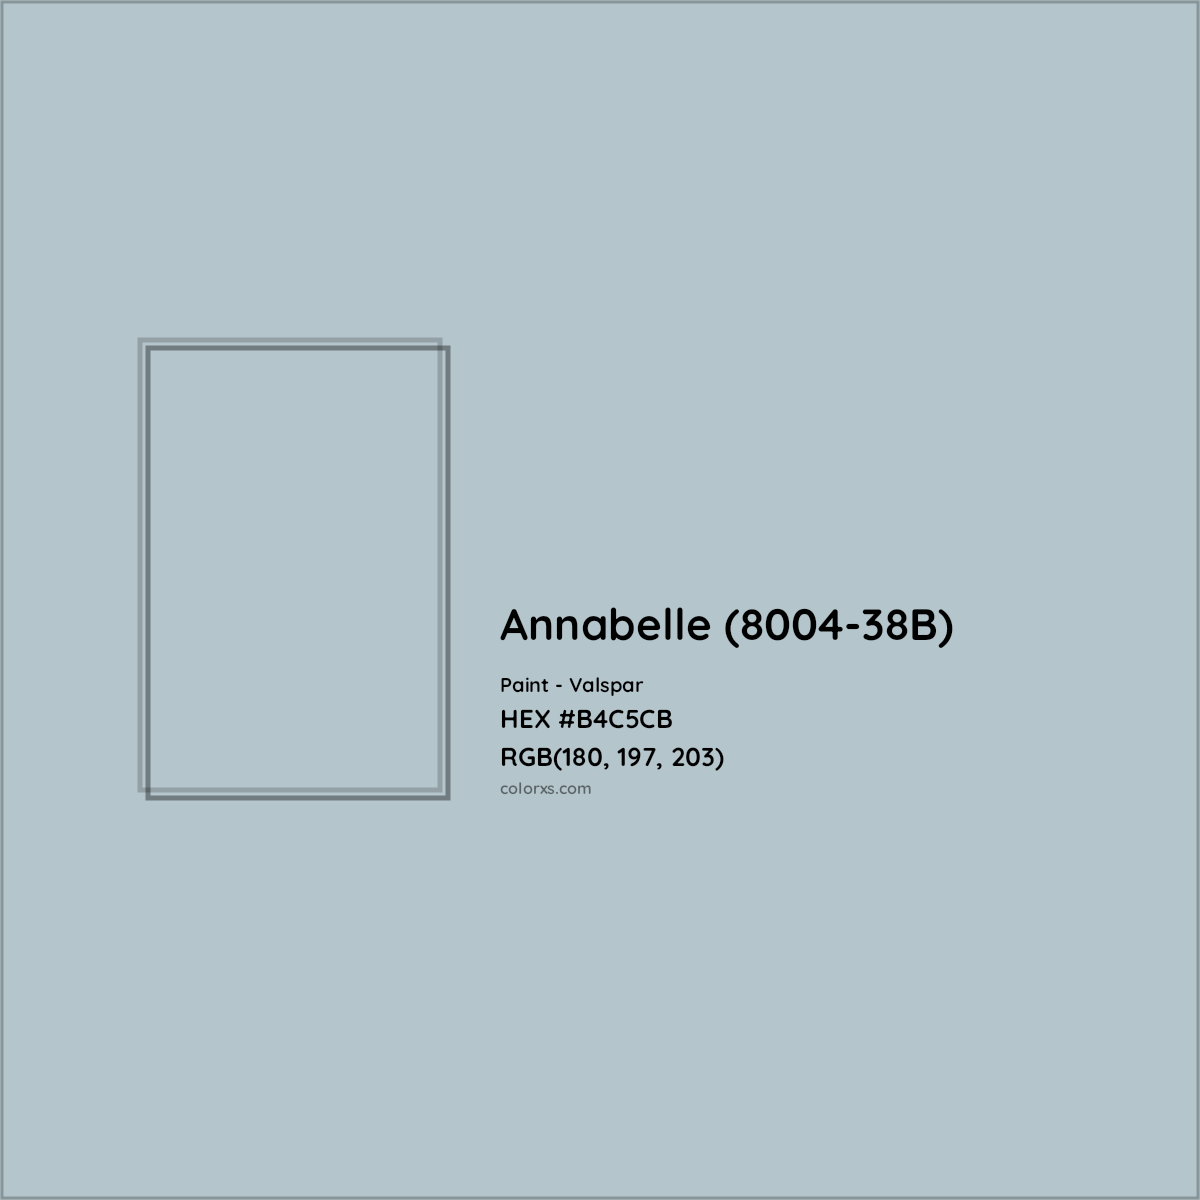 HEX #B4C5CB Annabelle (8004-38B) Paint Valspar - Color Code